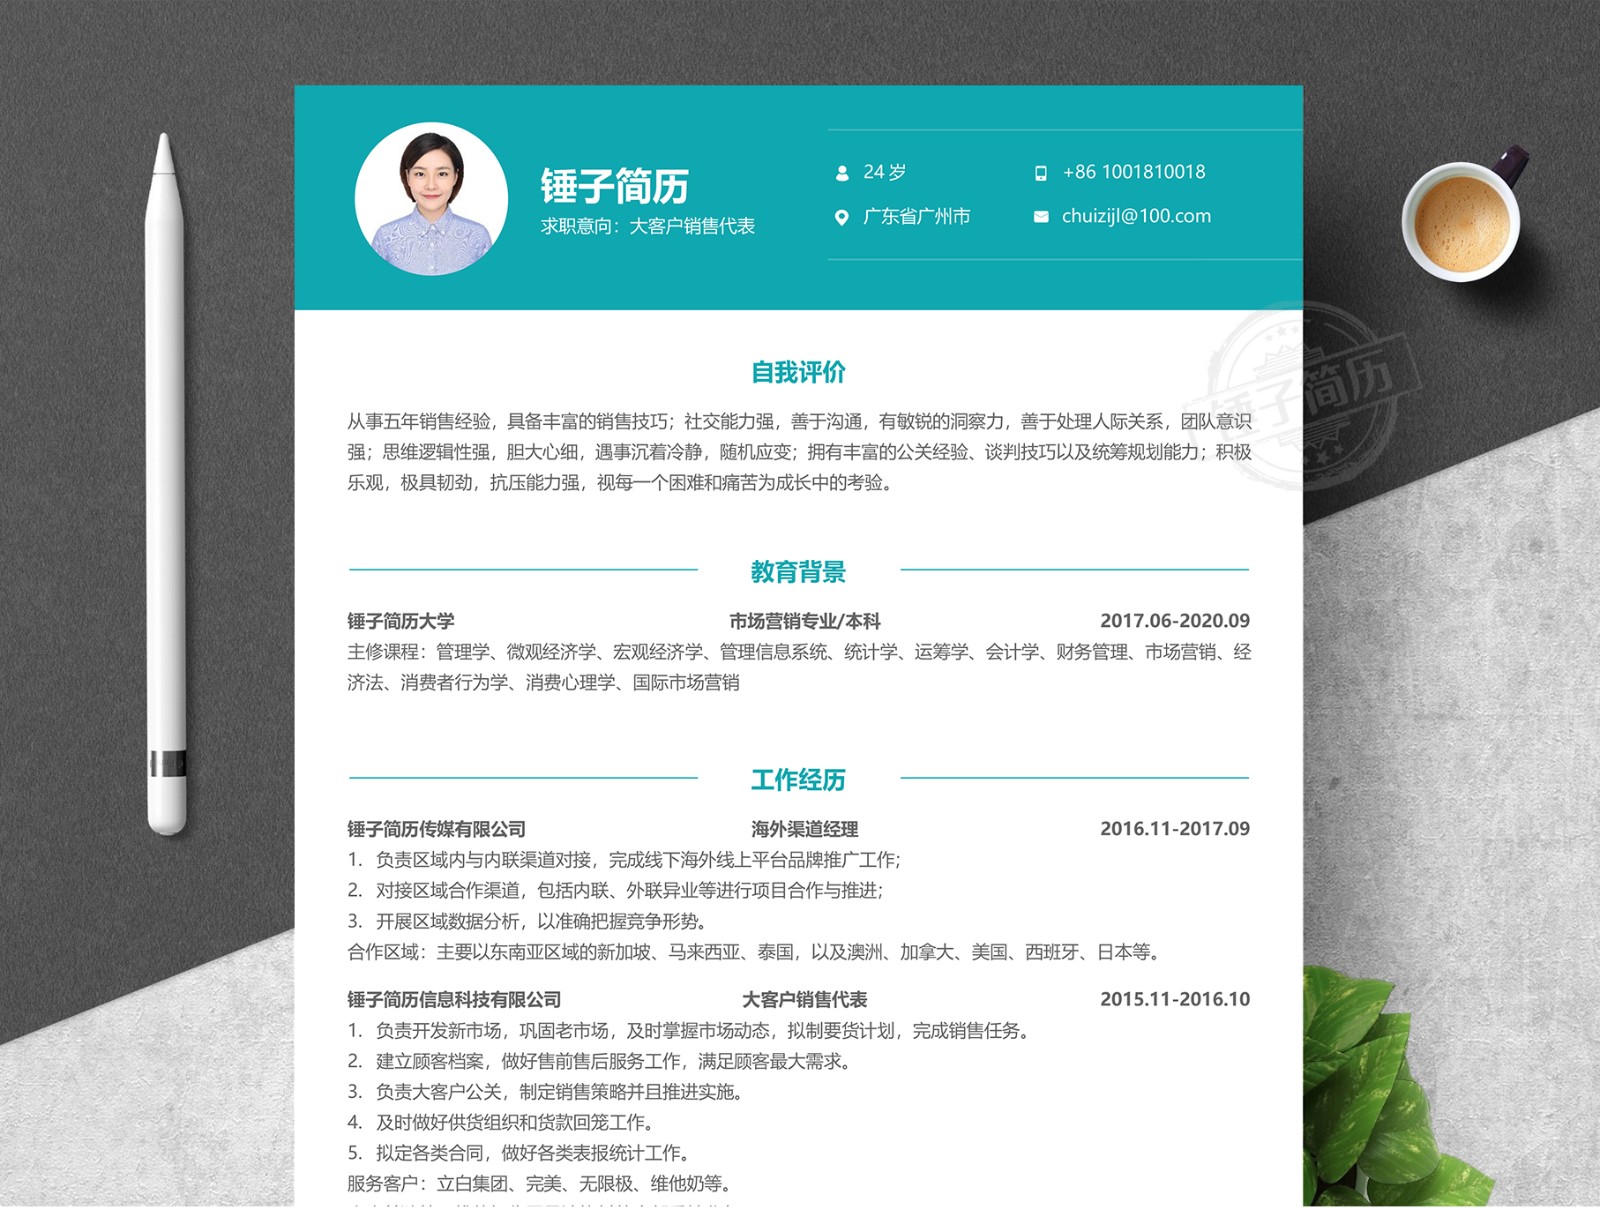 绿白色简约市场营销中文简历 - 模板 - Canva可画